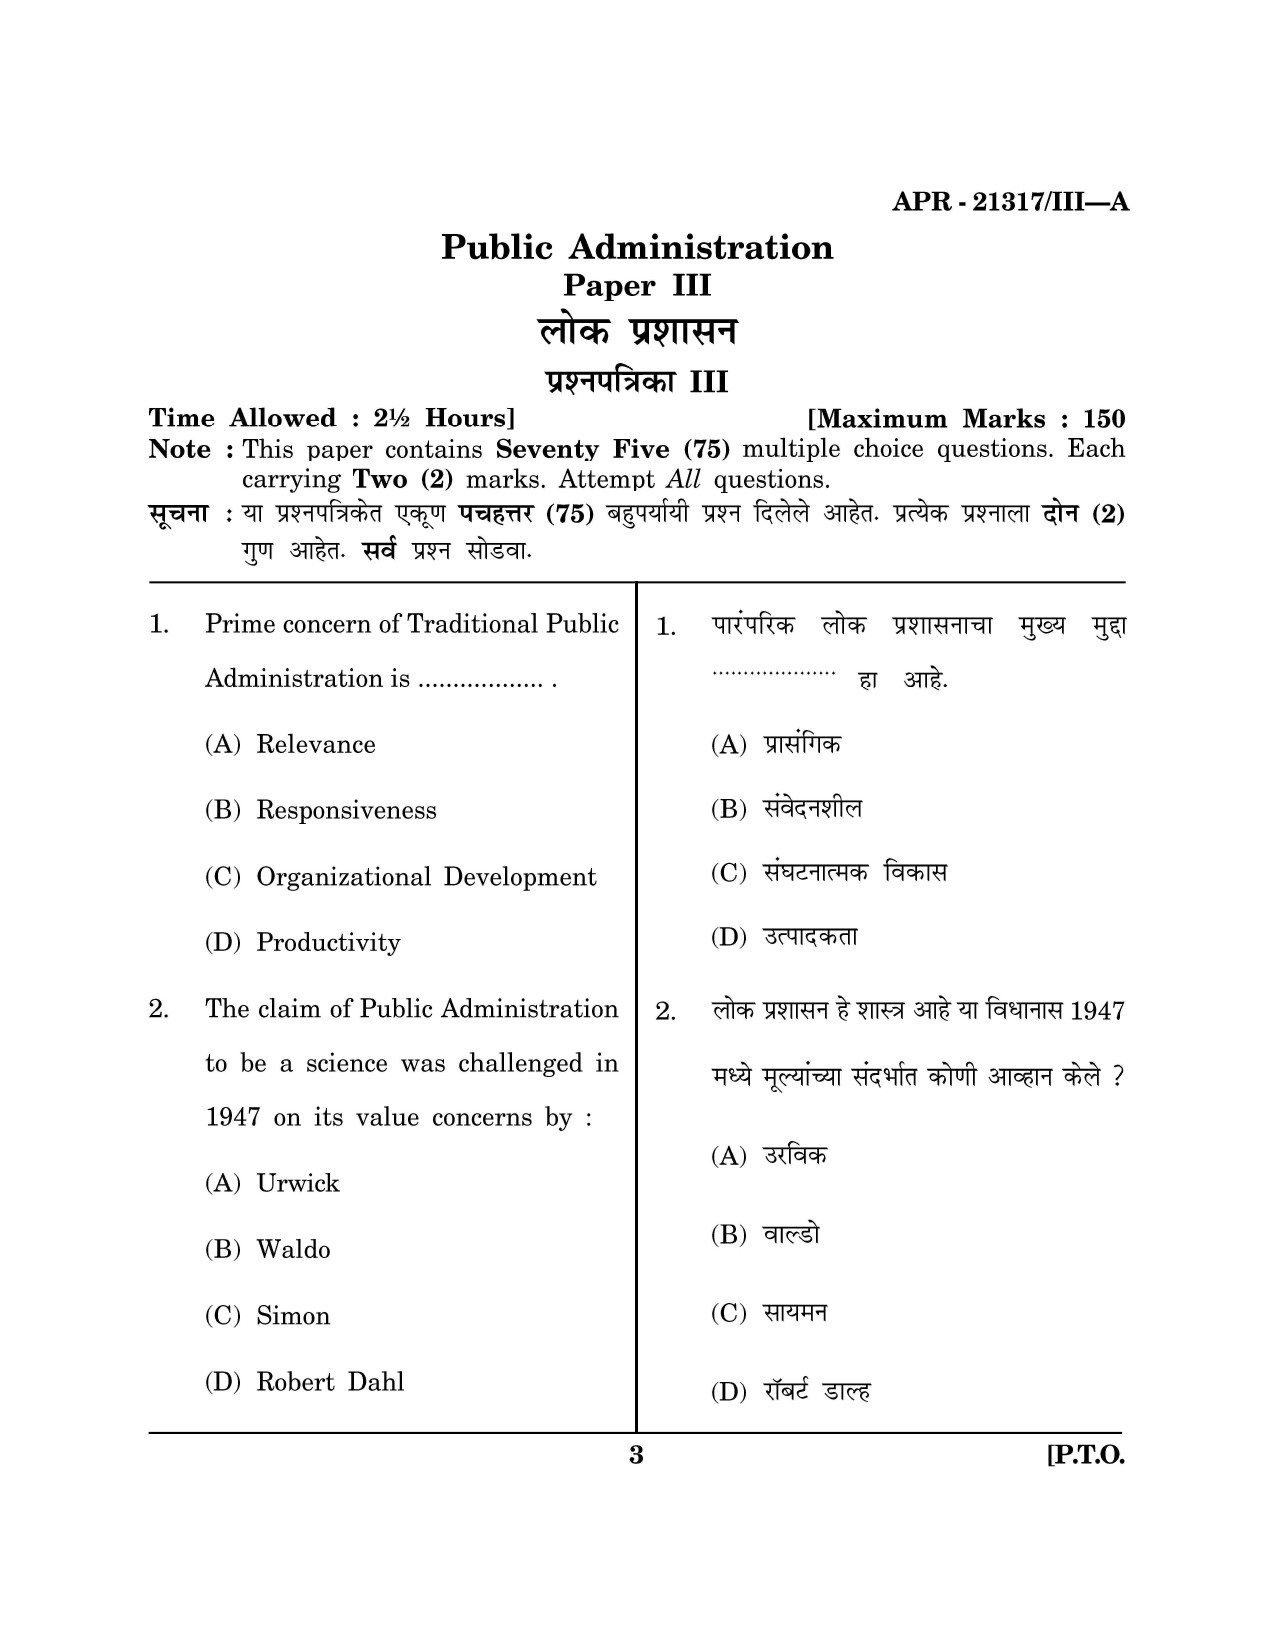 Maharashtra SET Public Administration Question Paper III April 2017 2